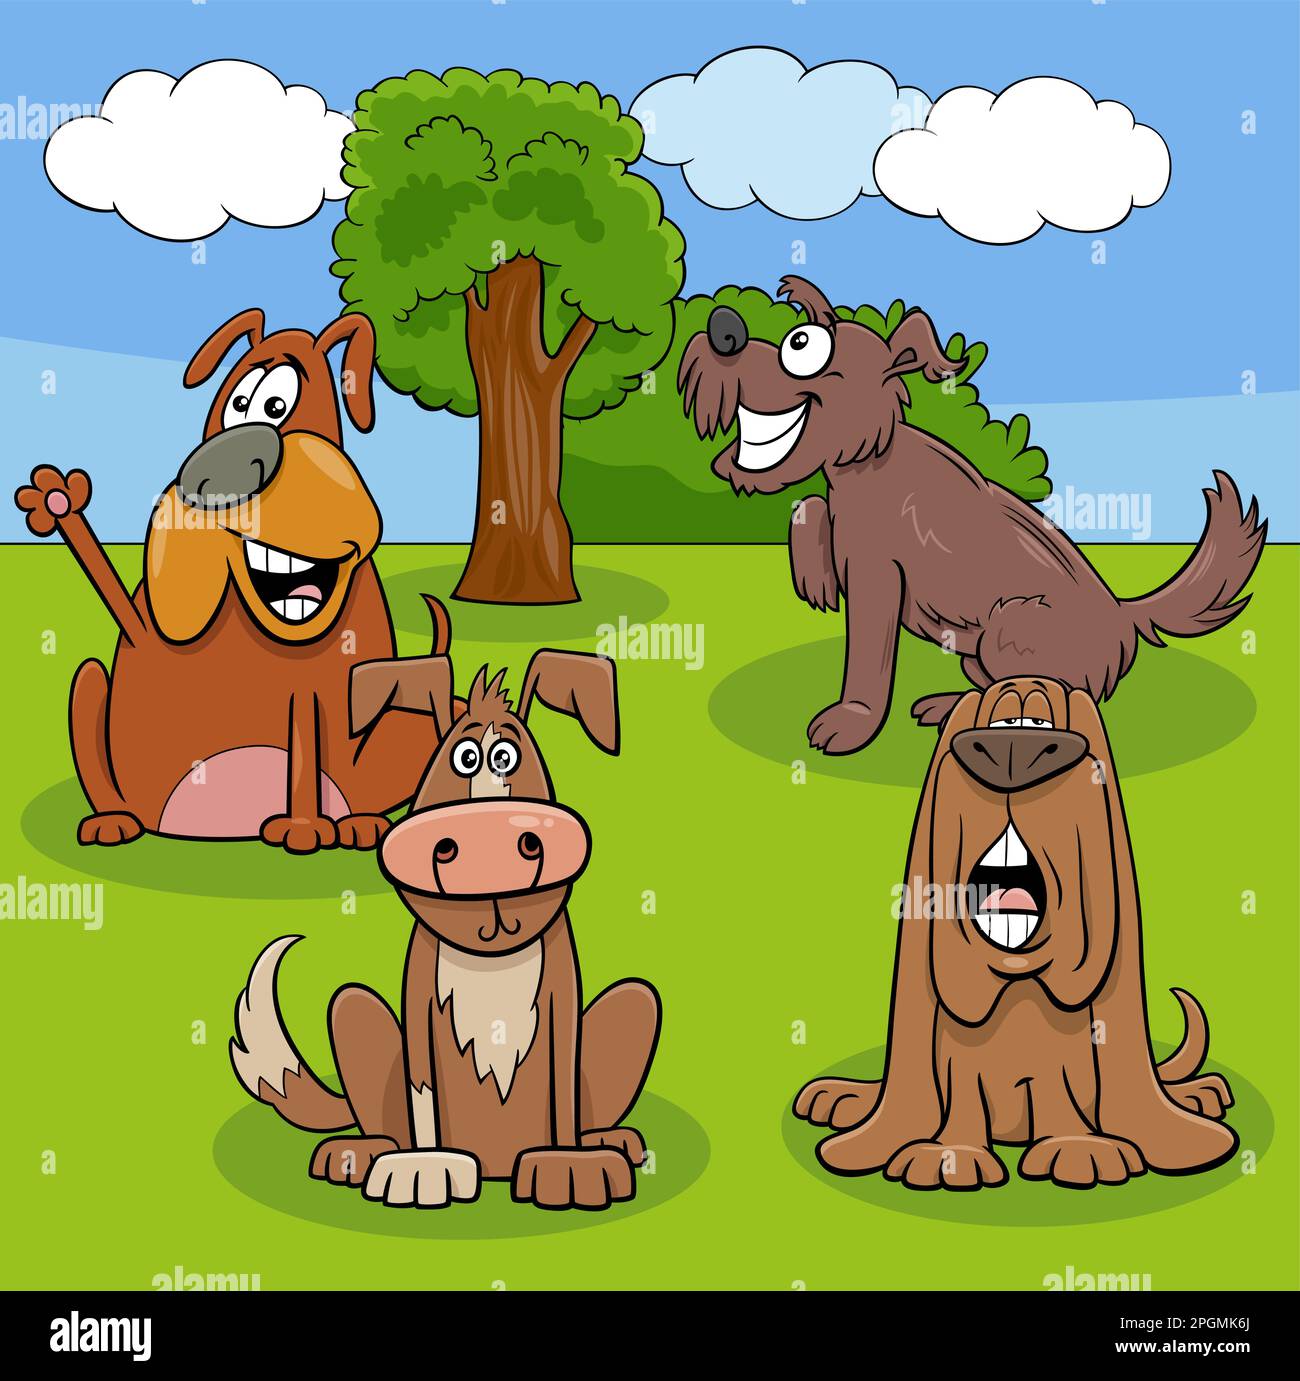 Illustration de dessins animés de chiens drôles et de personnages animaux de chiots dans un pré Illustration de Vecteur